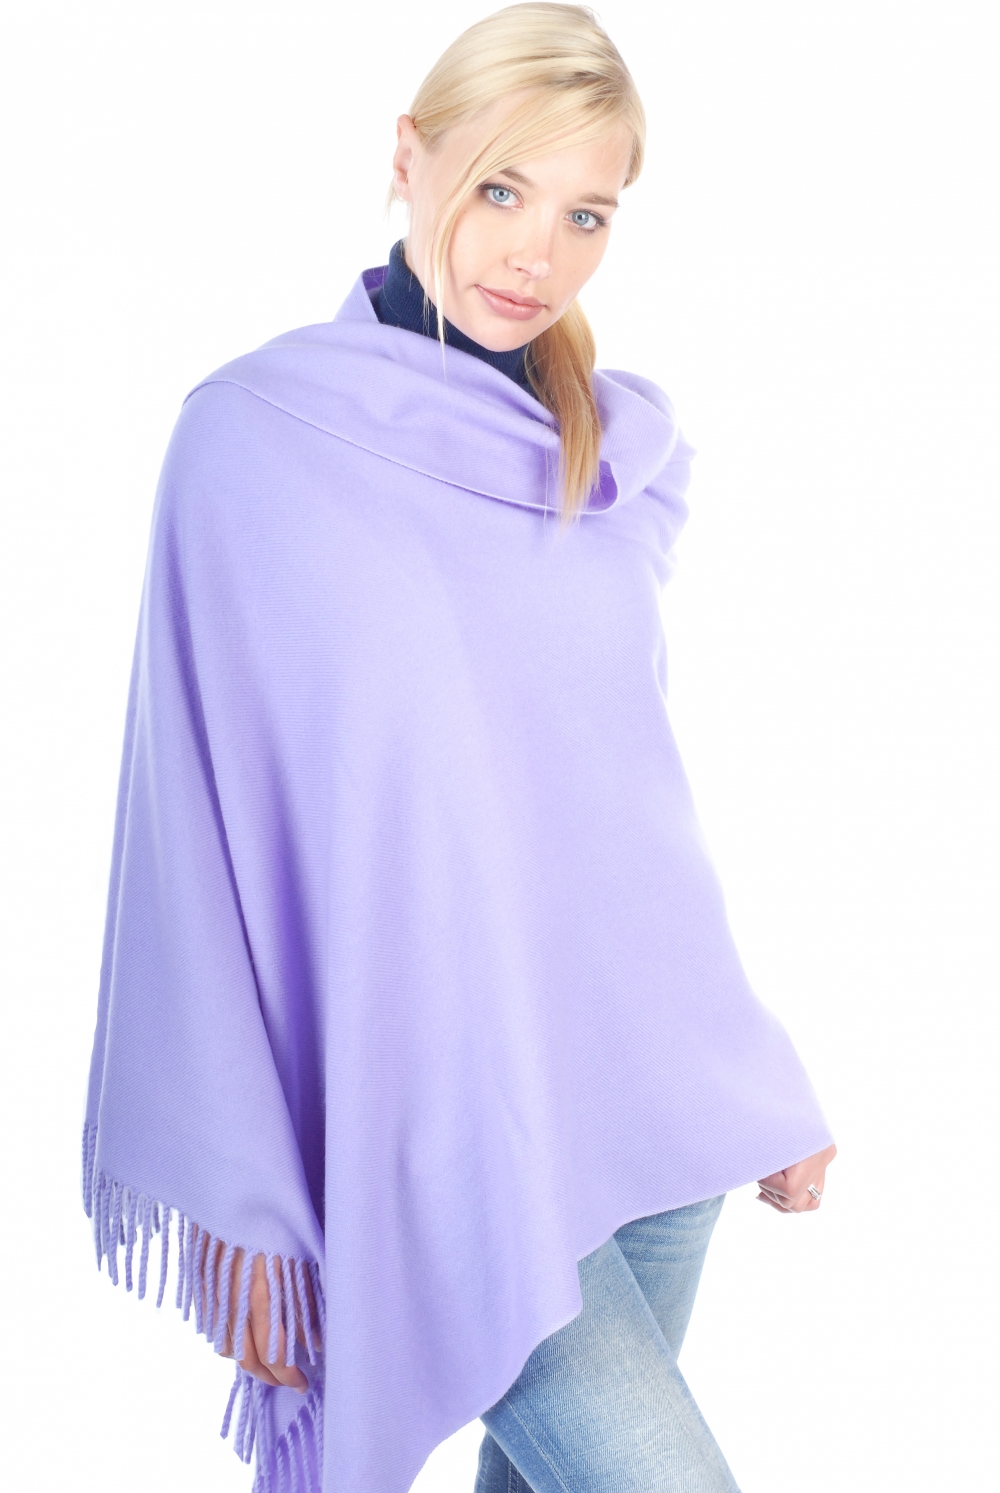 Cashmere accessoires niry bluhender lavendel 200x90cm